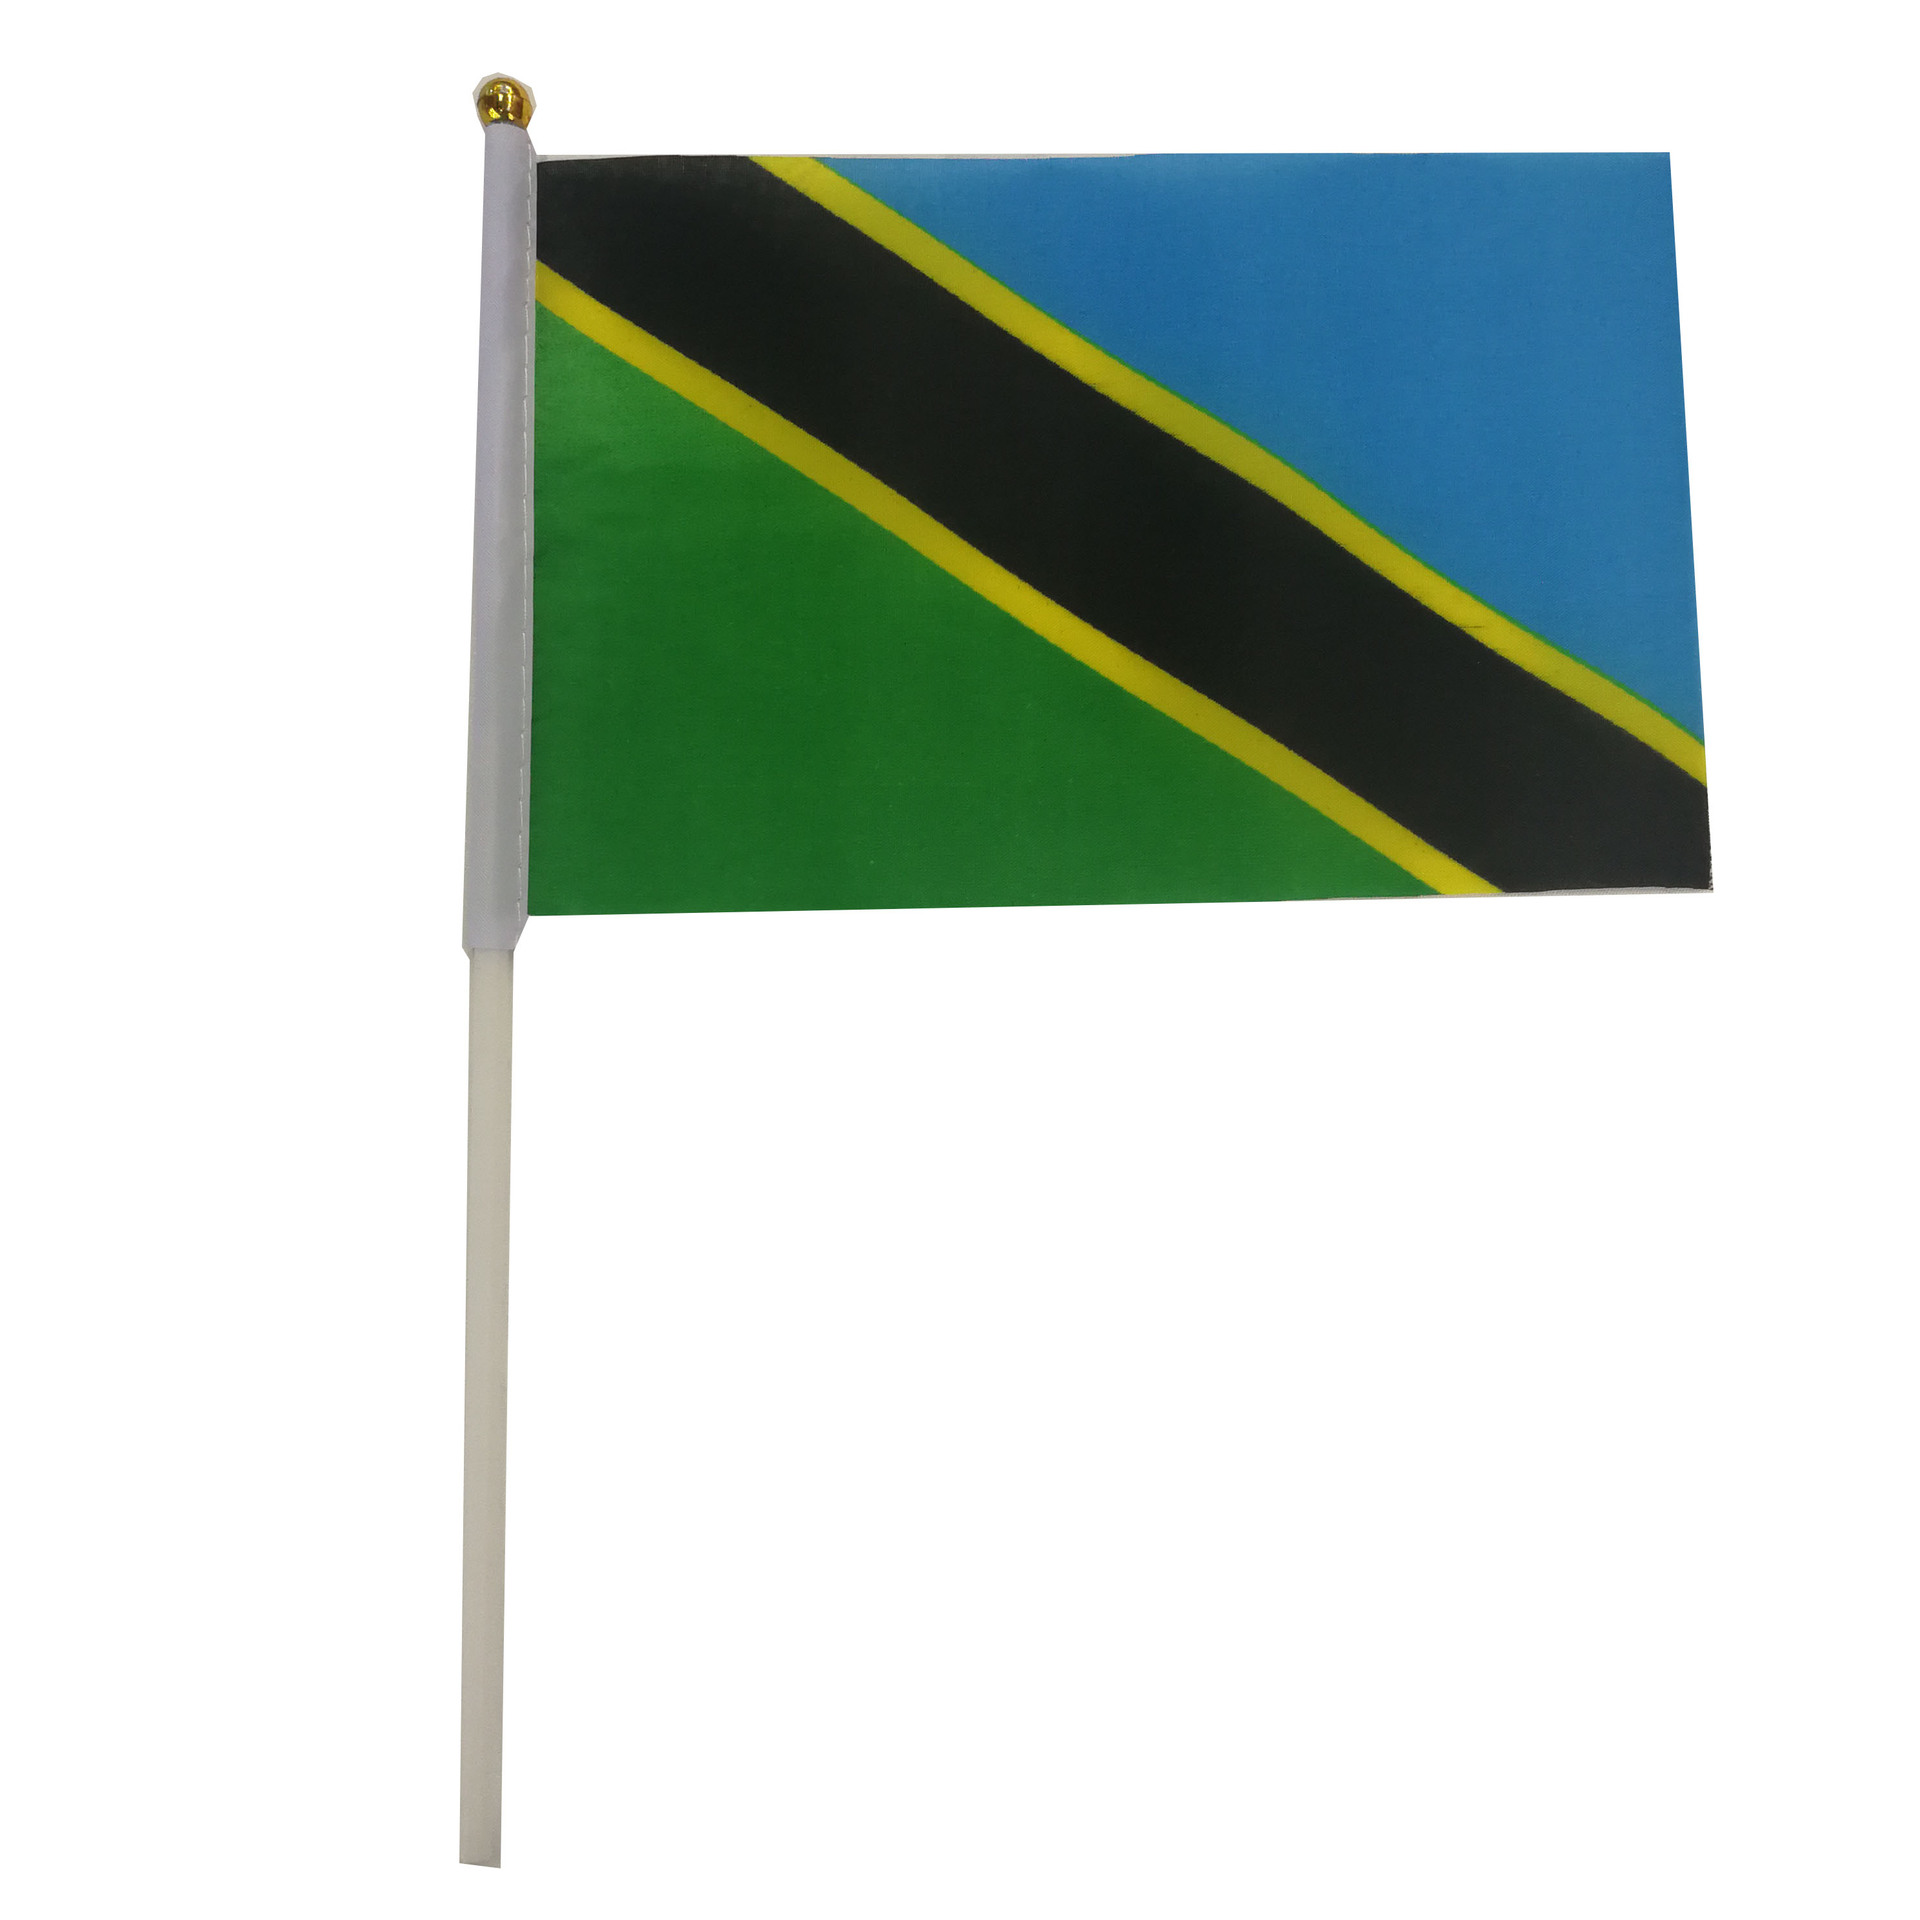 坦桑尼亚旗帜国旗手摇旗双面印刷涤纶布料厂家直销可来样订做